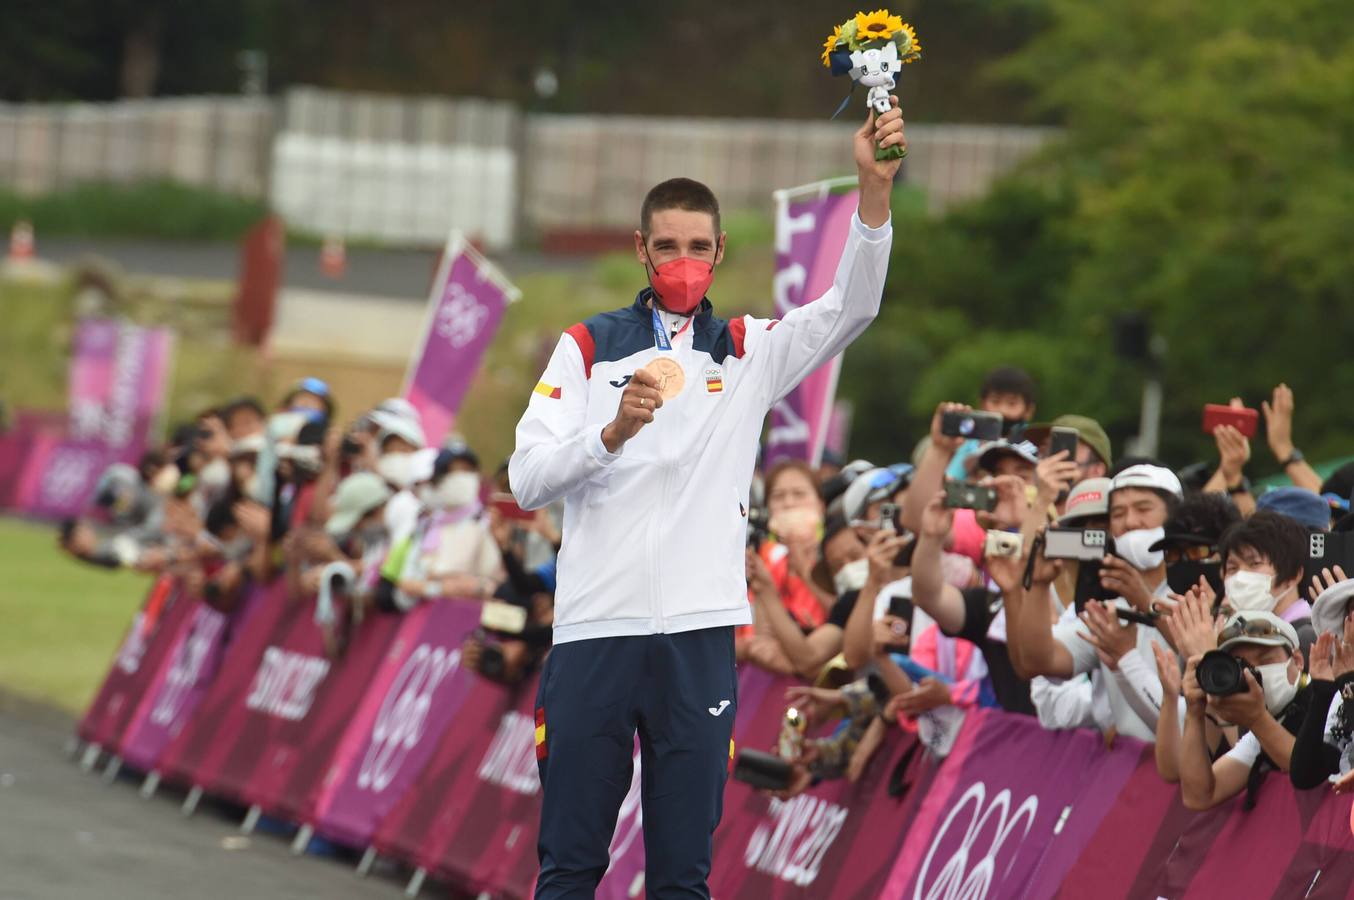 Juegos Olímpicos Tokyo 2020: El granadino David Valero logra el bronce en mountain bike